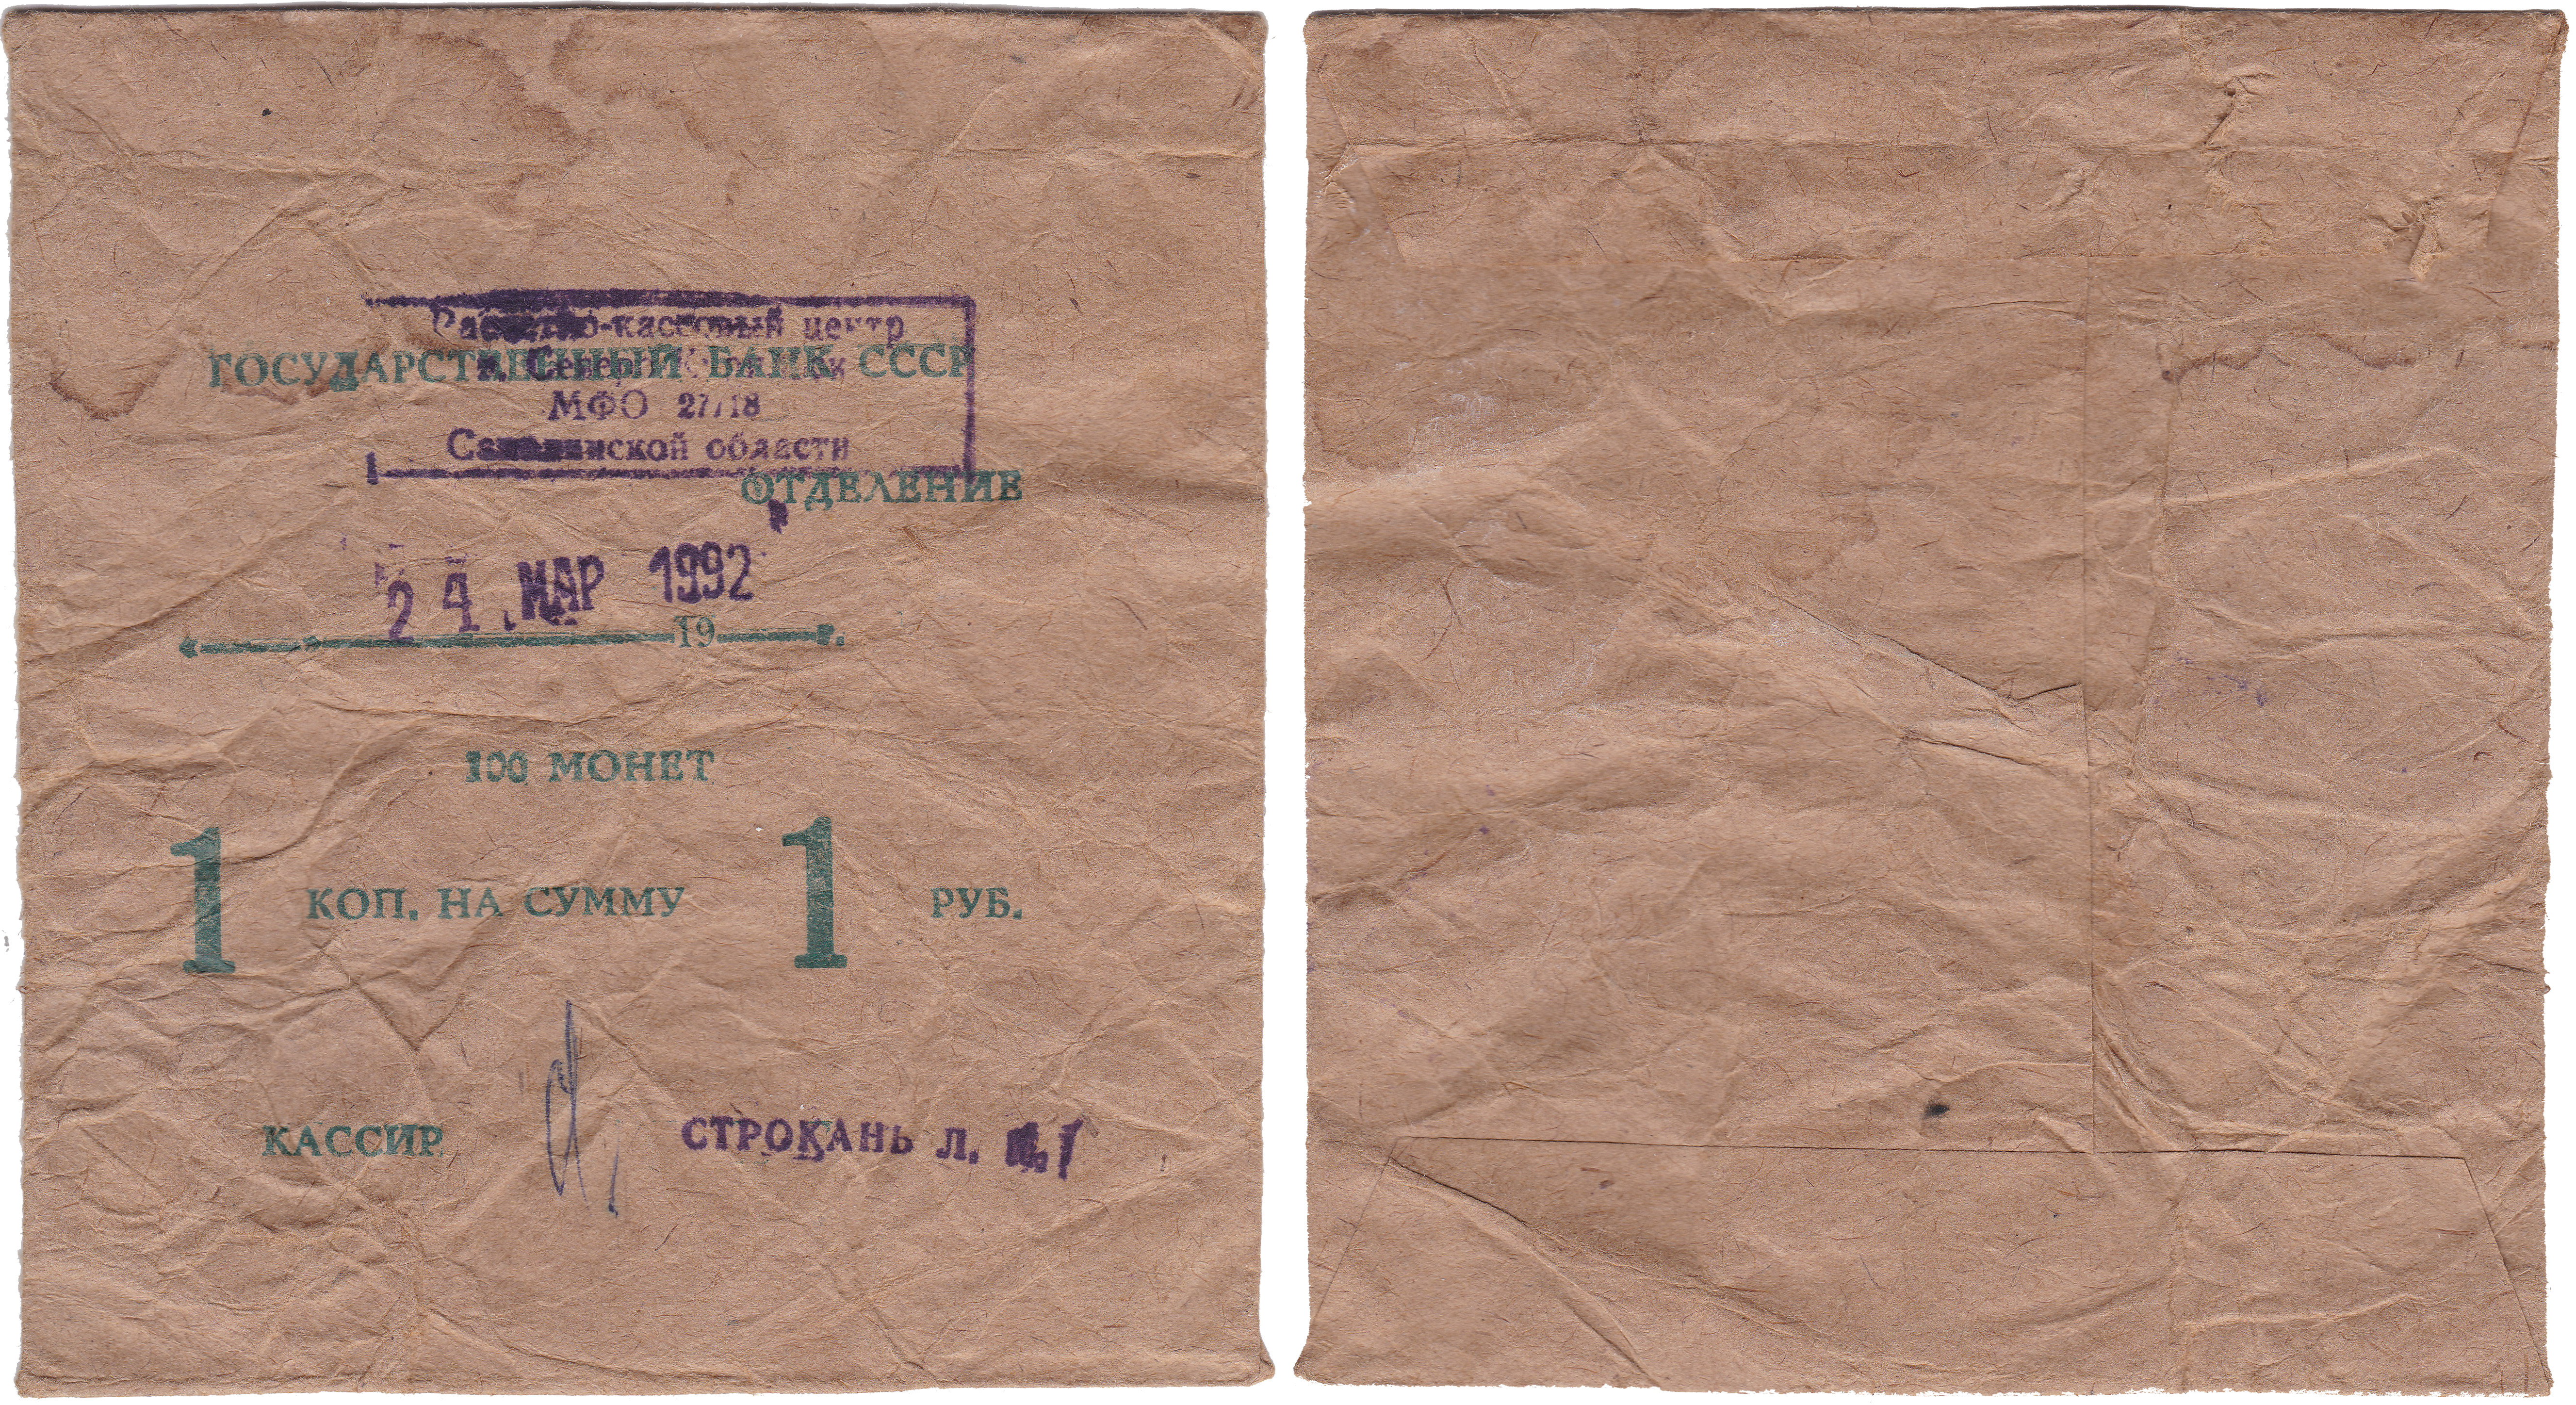 Банковский пакет с монетами номиналом 1 Копейка на сумму 1 Рубль 1992 год. Расчетно-кассовый центр Северо-Курильск Сахалинской области